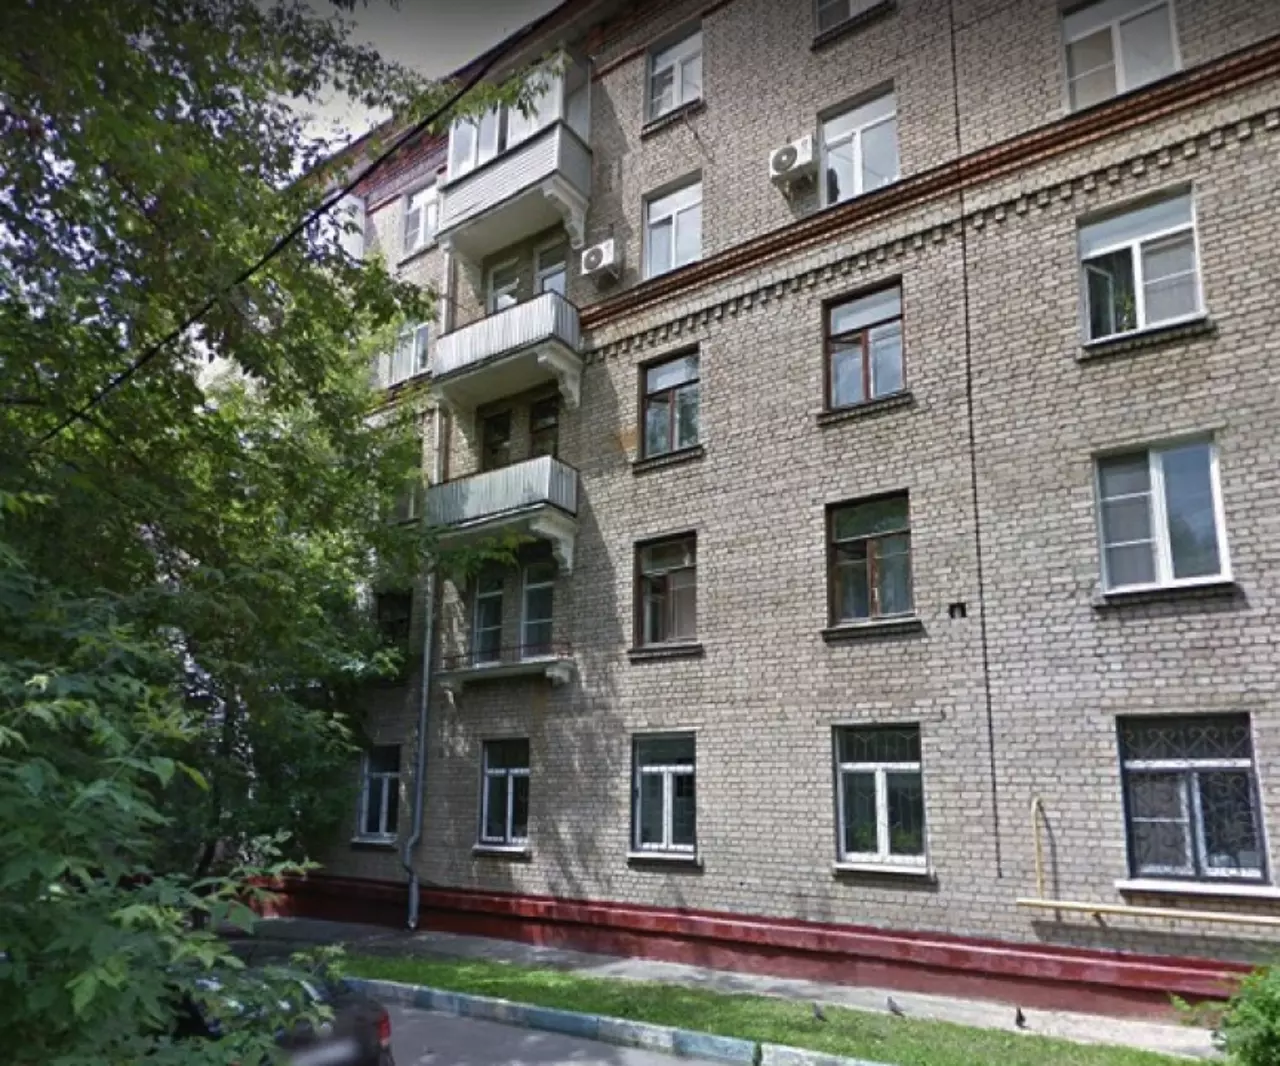 Продам квартиру в Москве по адресу Каширское шоссе, 56к2, площадь 171 квм Недвижимость Москва (Россия)  Район отличается развитой социальной инфраструктурой, удобной транспортной доступностью до центра города и других районов столицы